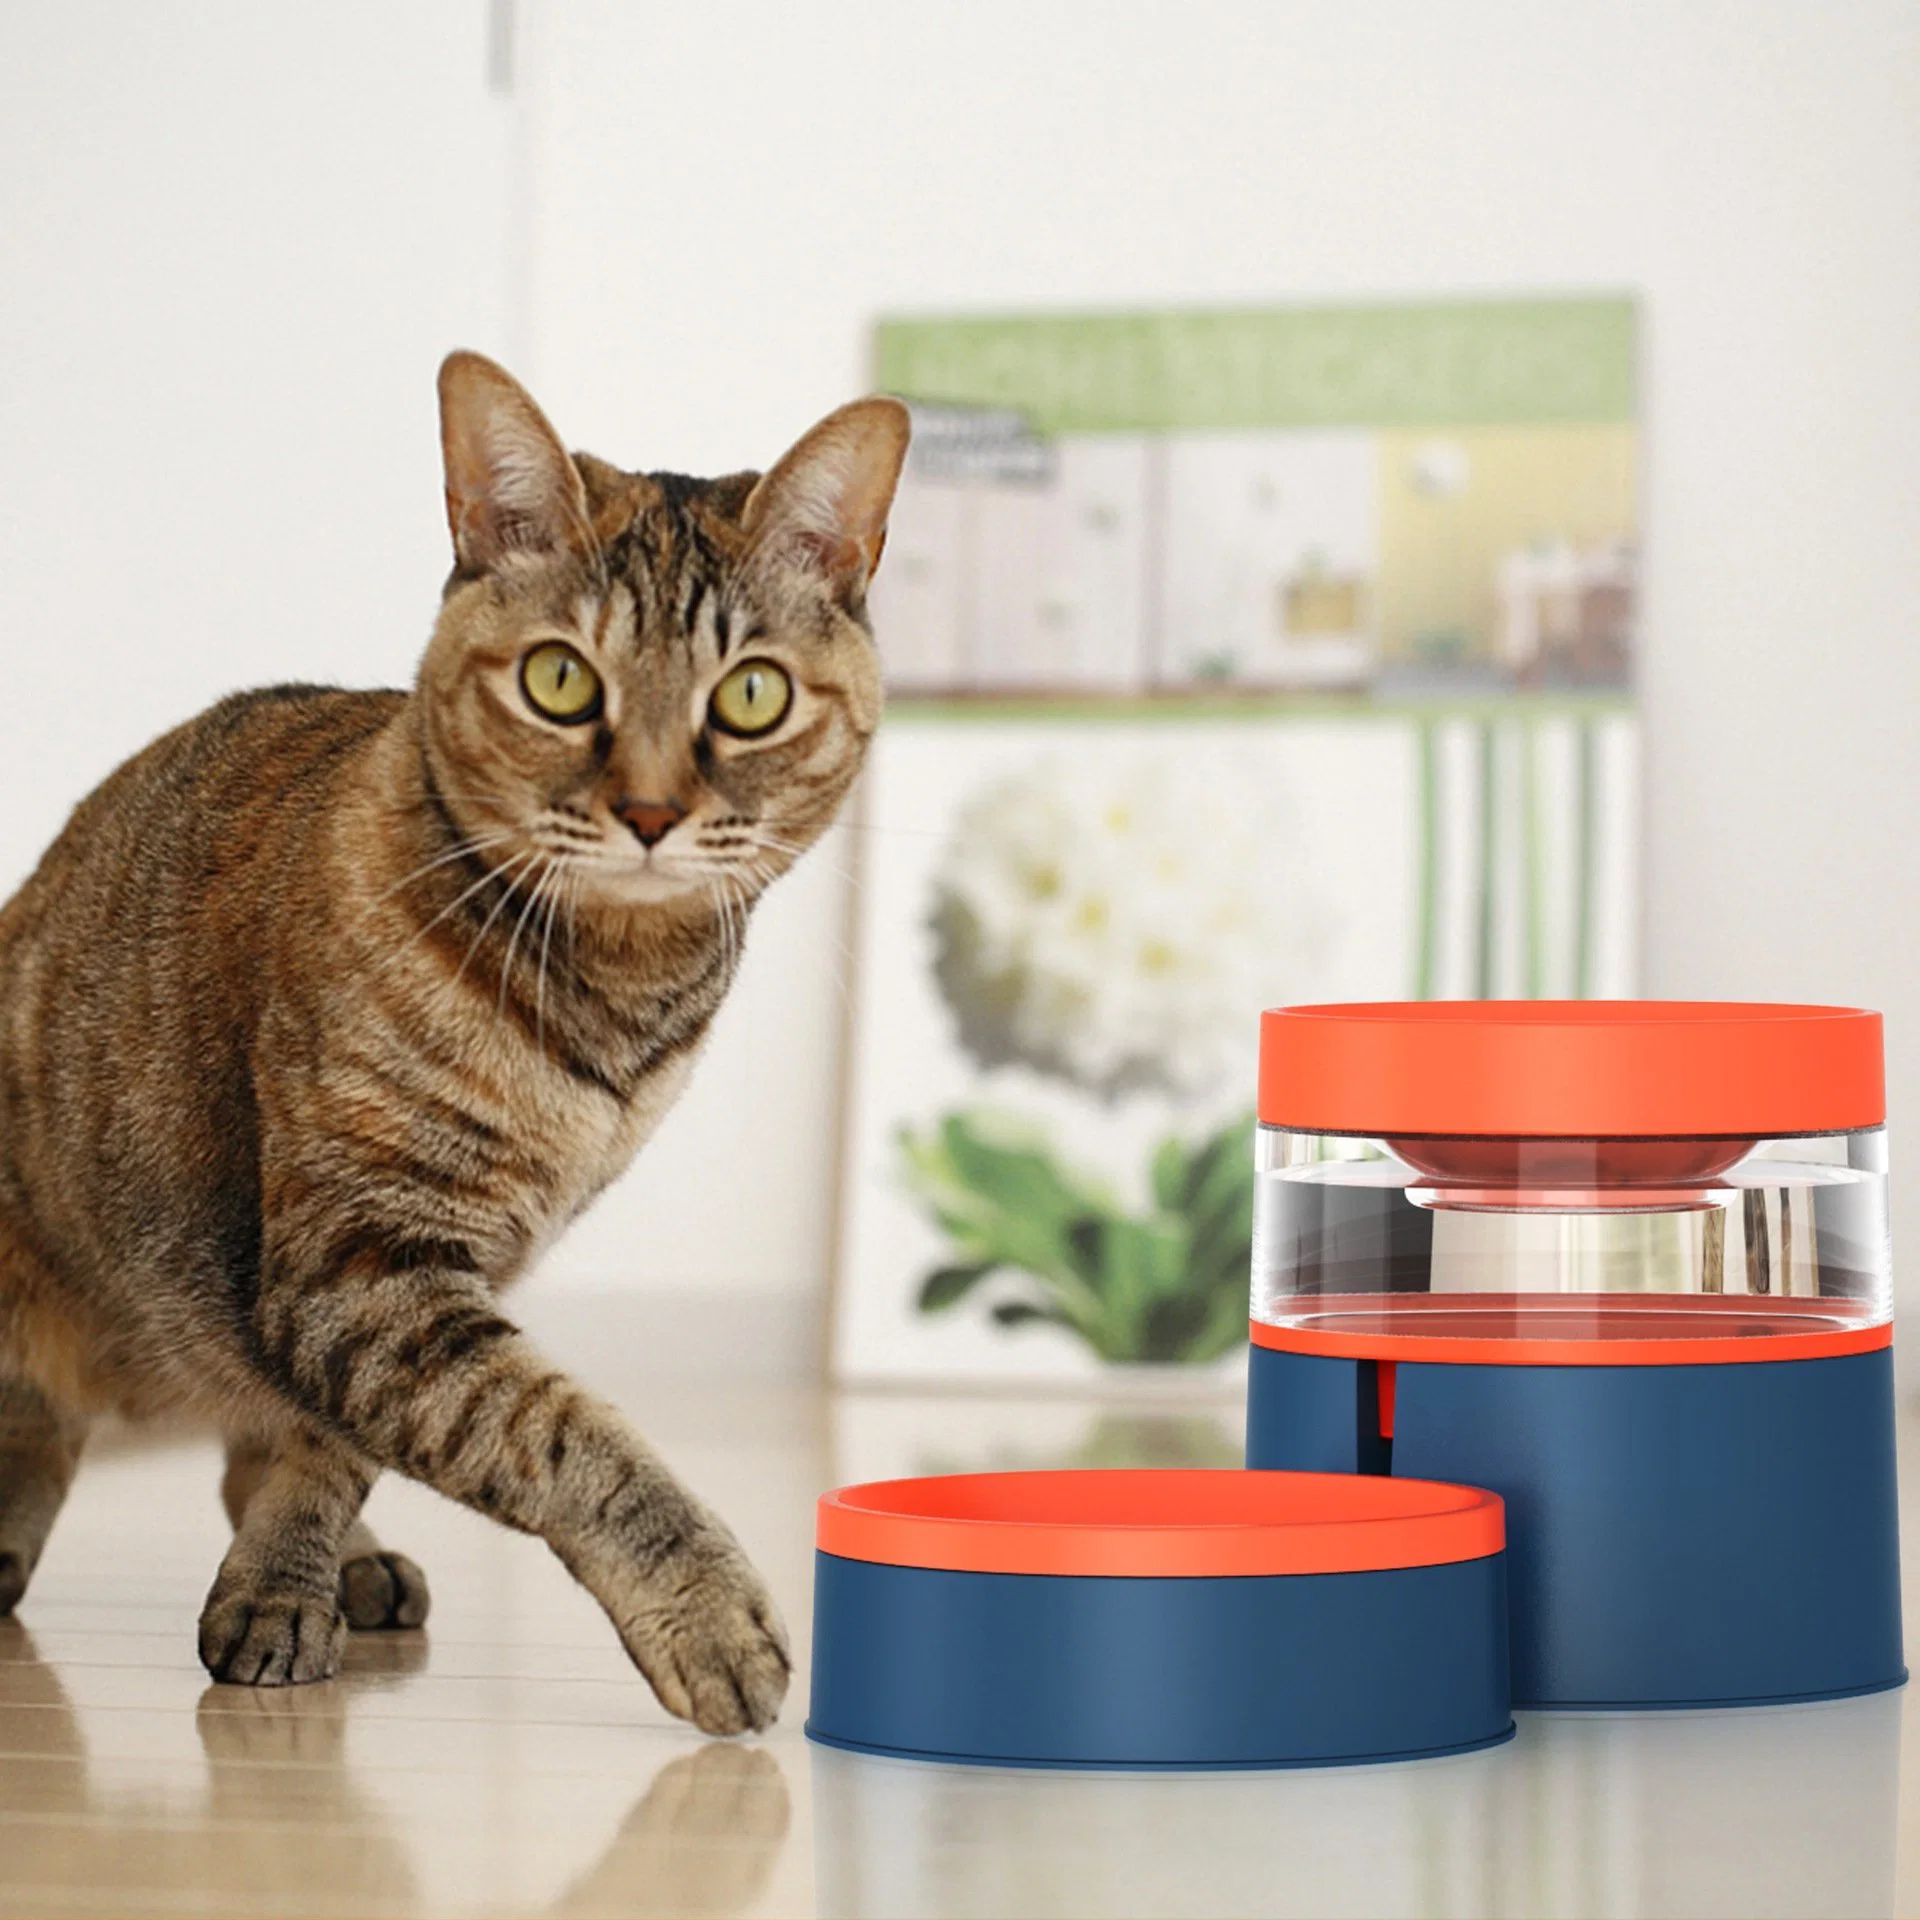 O Amazon Cat transfronteiriço fornece três dimensões ao New Pet All-in-One Dog Bowl Proteção para o pescoço alimentador automático de água potável para Cuba Cat